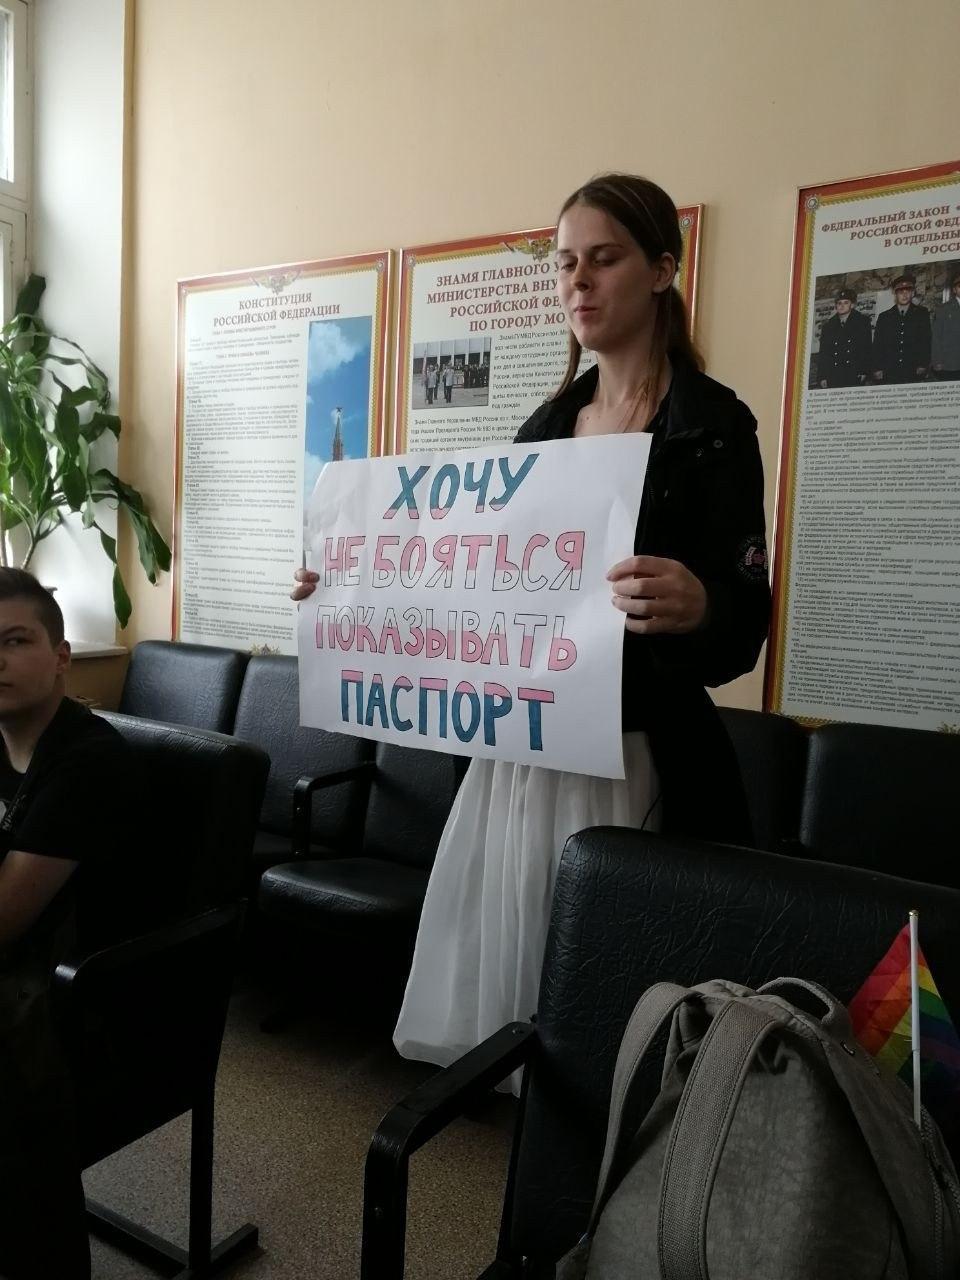 Московскую активистку арестовали и поместили в мужскую камеру. По документам все правильно!